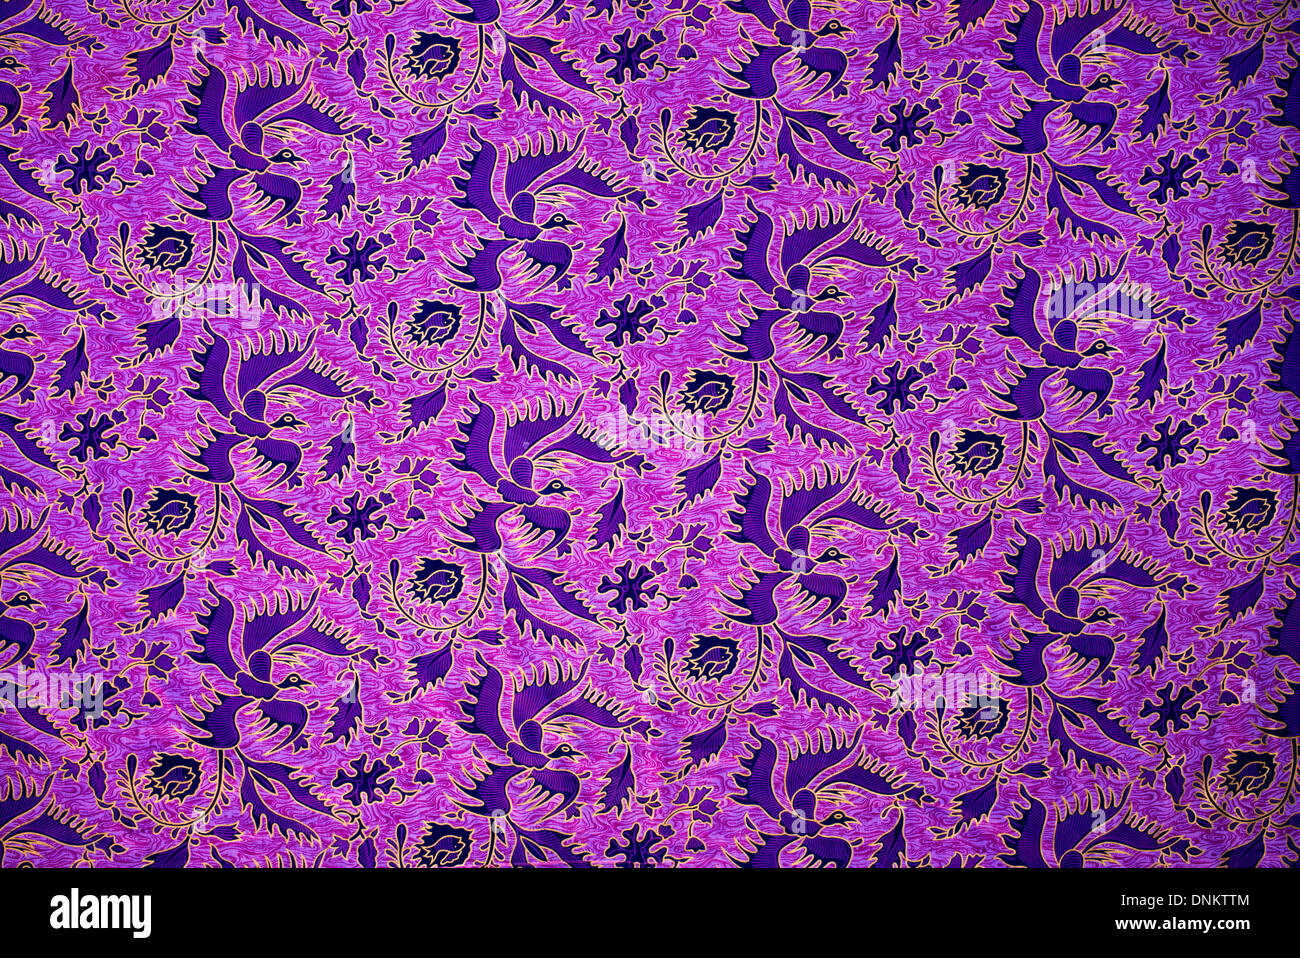 Purple bird fabric pattern on Indian Cotton Sari Stock Photo